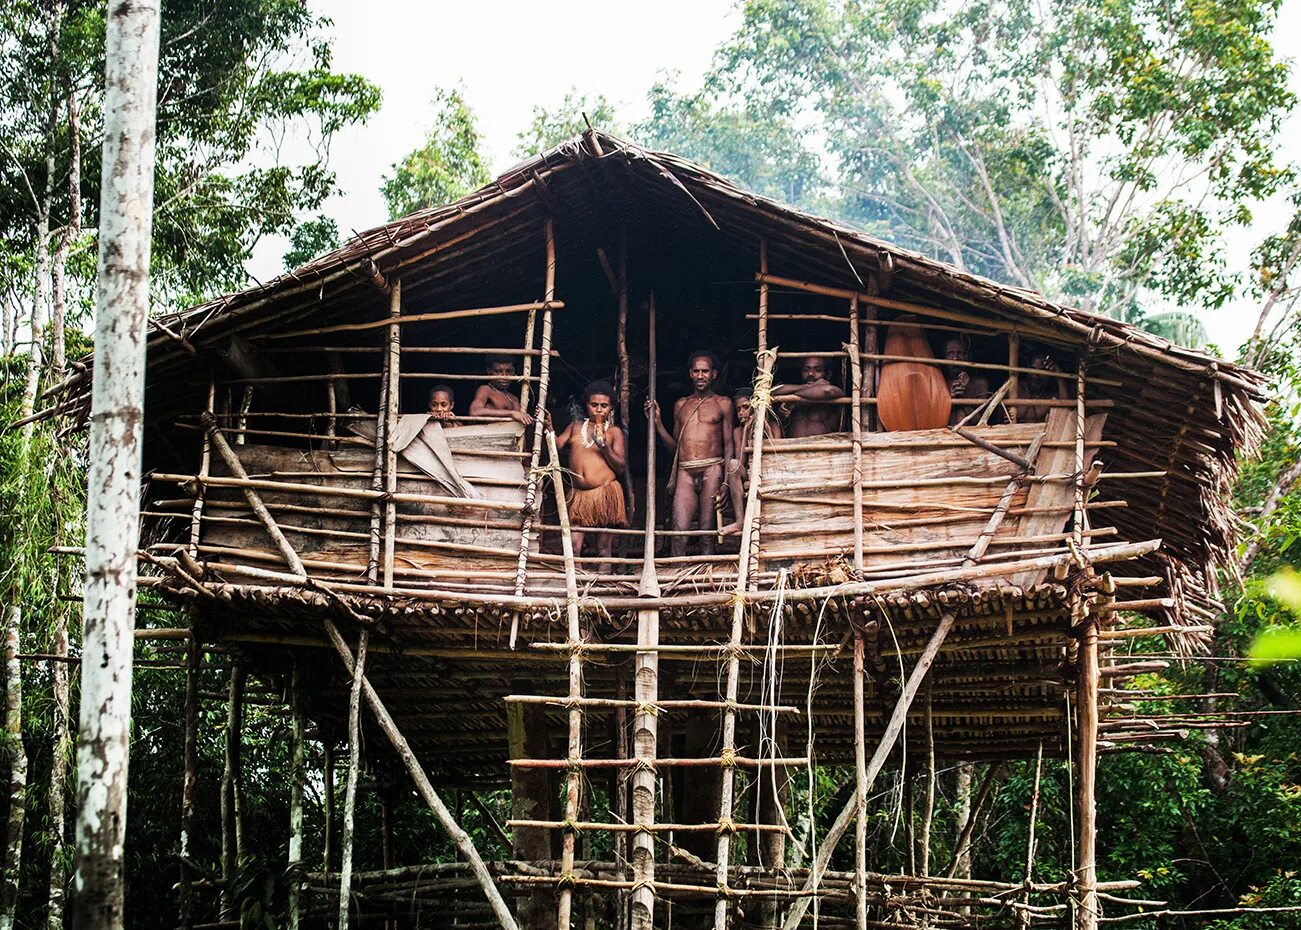 Племя КОРОВАИ Папуа новая Гвинея жилища на деревьях. Индонезия — племя КОРОВАИ. Новая Гвинея. Племя КОРОВАИ. Домашние племен